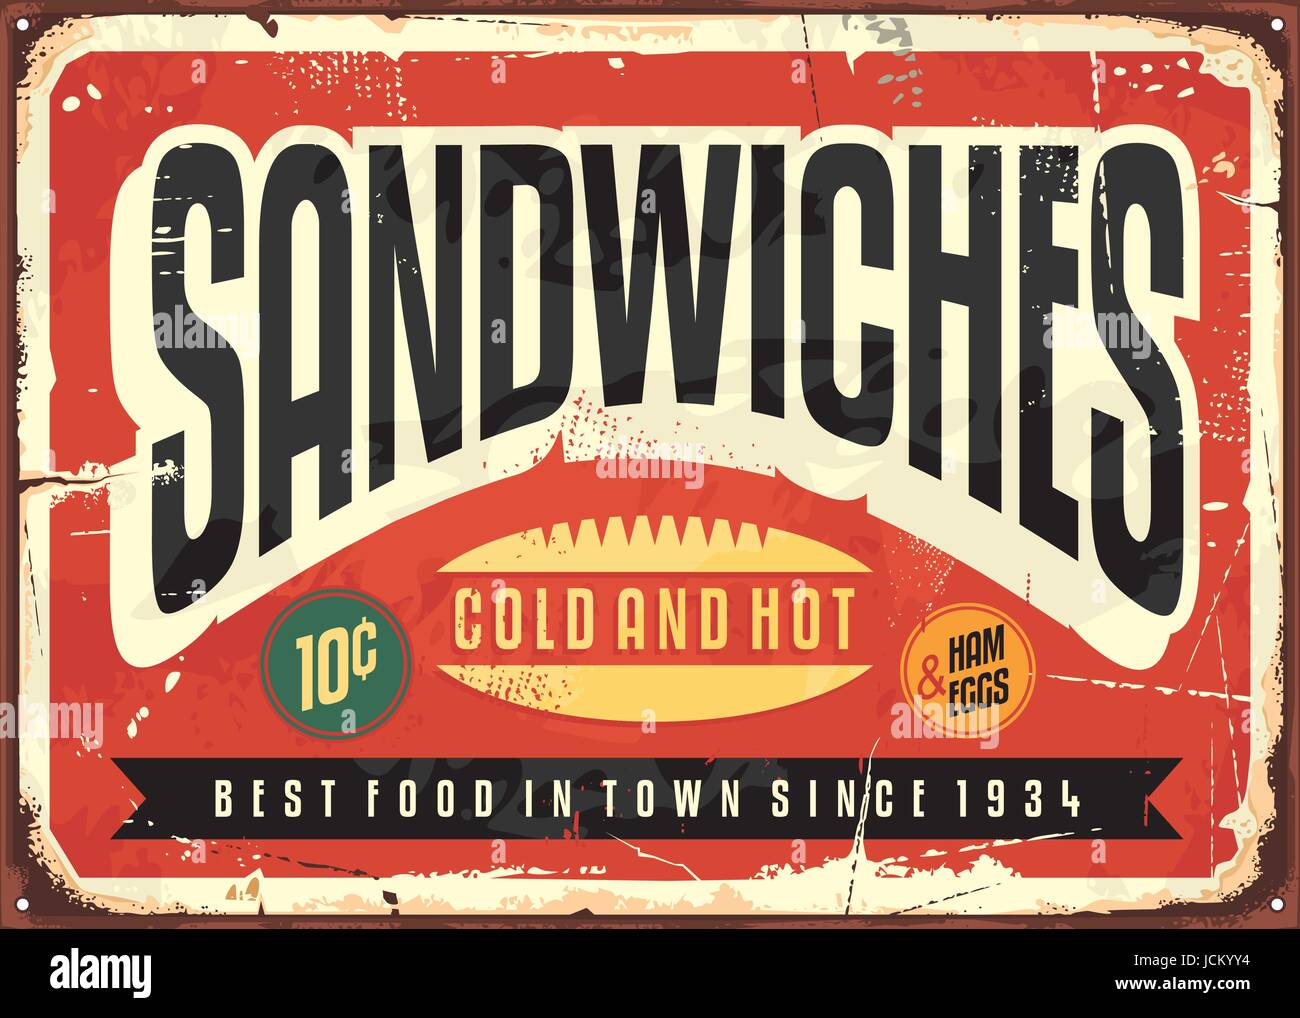 Retro food sign design for diner, restaurant or snack bar. Sandwiches vintage vector poster illustration on old red metal background. Stock Vector